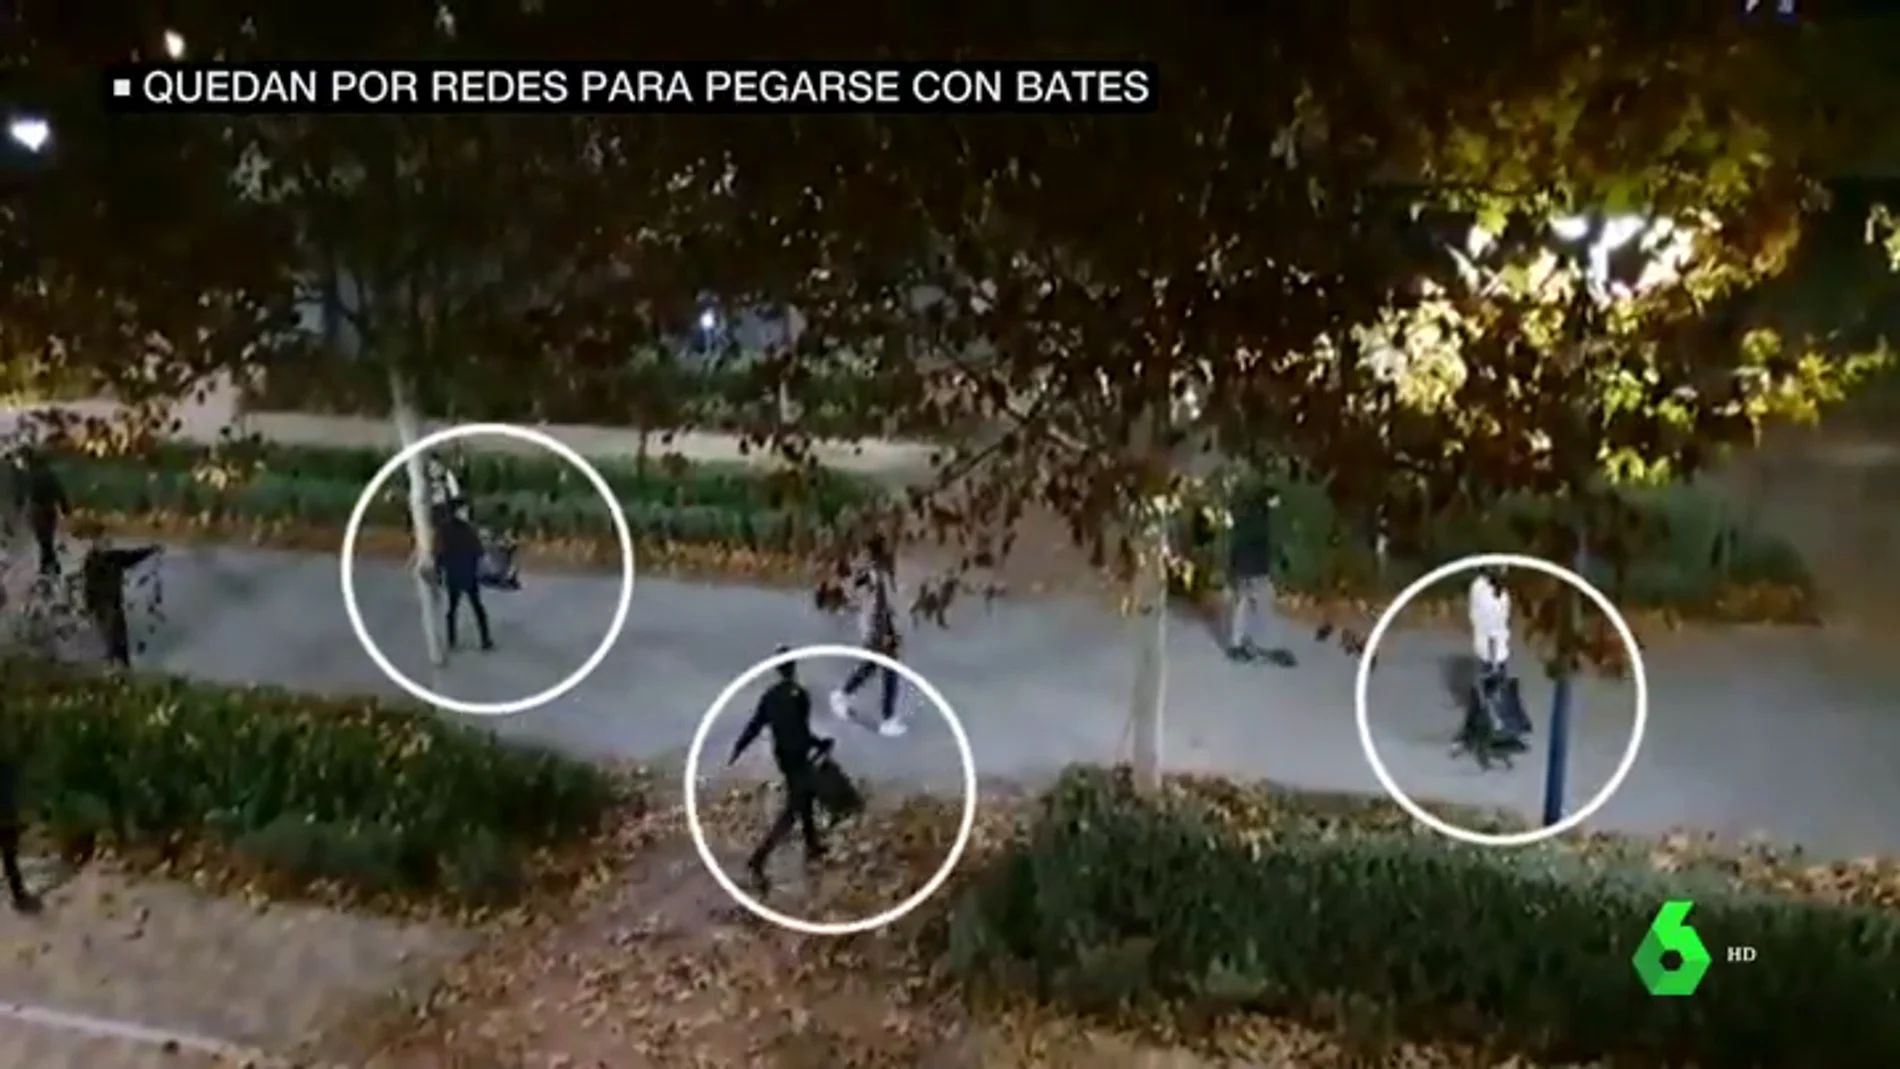 Menores quedan por redes sociales para pegarse con bates, sillas y piedras en Torrejón de Ardoz